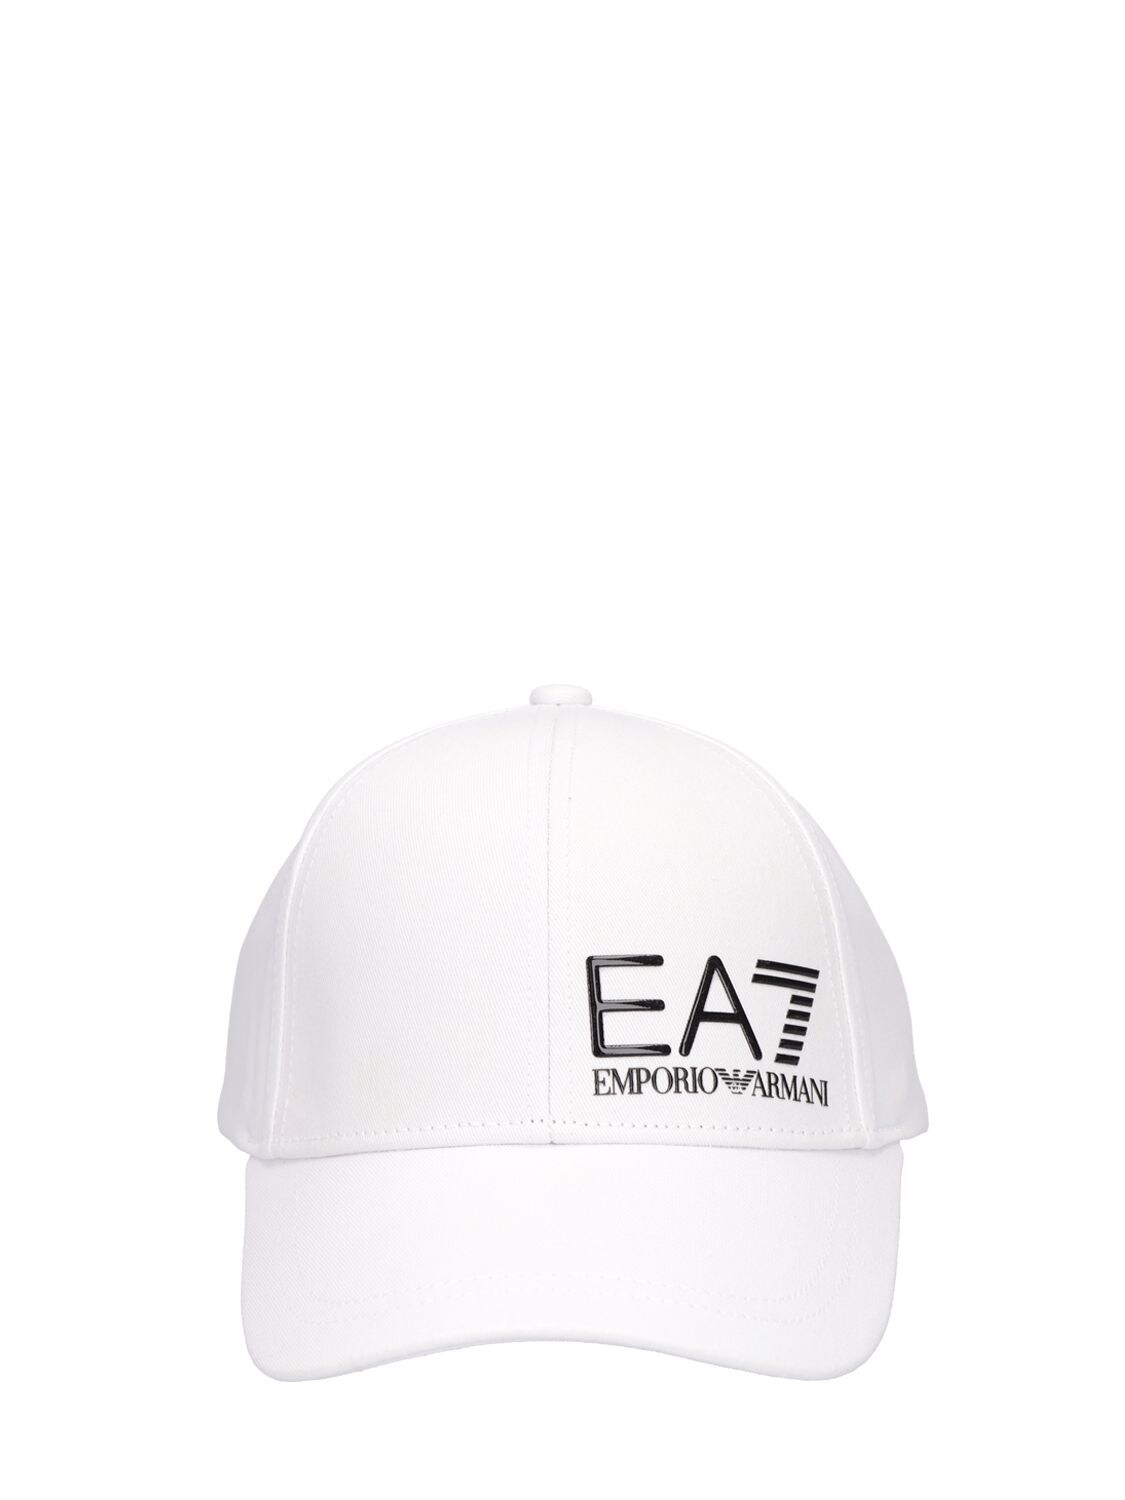 Core Identity Cotton Baseball Cap - EA7 EMPORIO ARMANI - Modalova